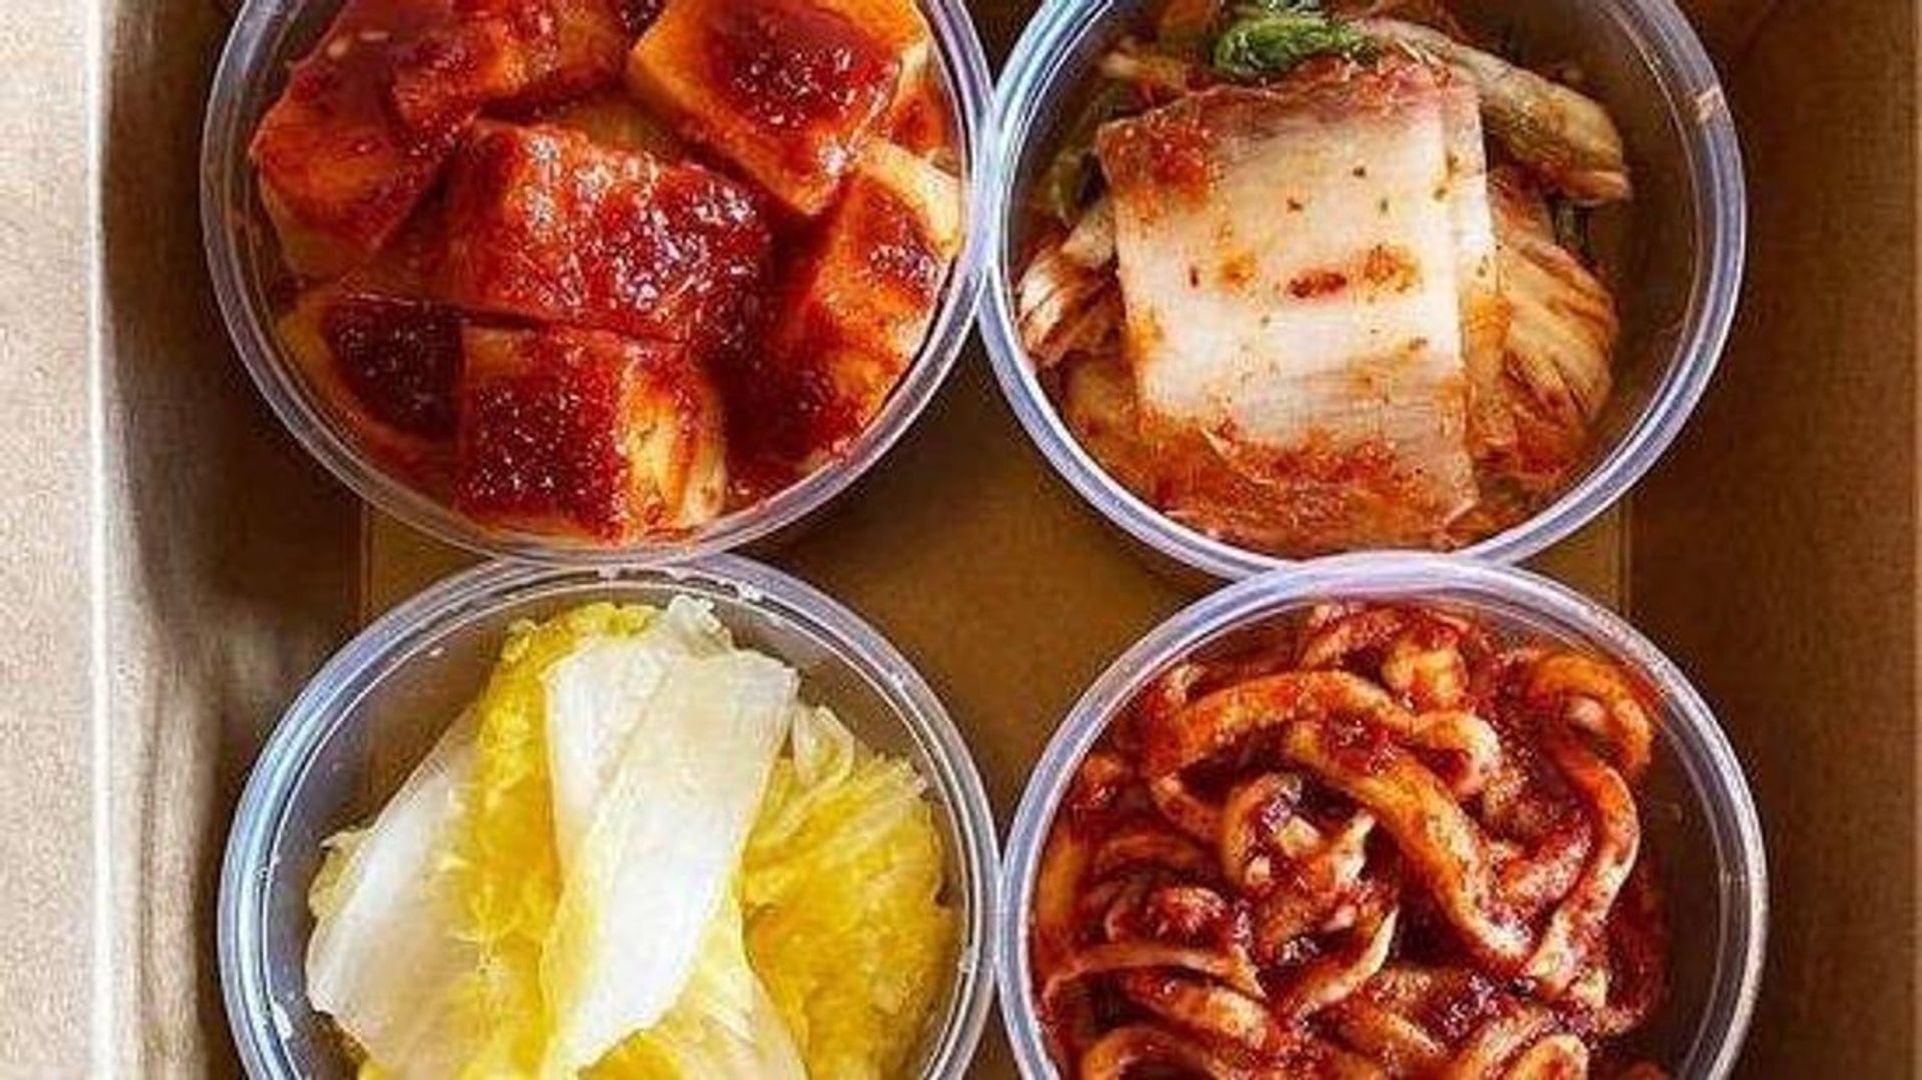 Kimchi Banchan 4-Pack